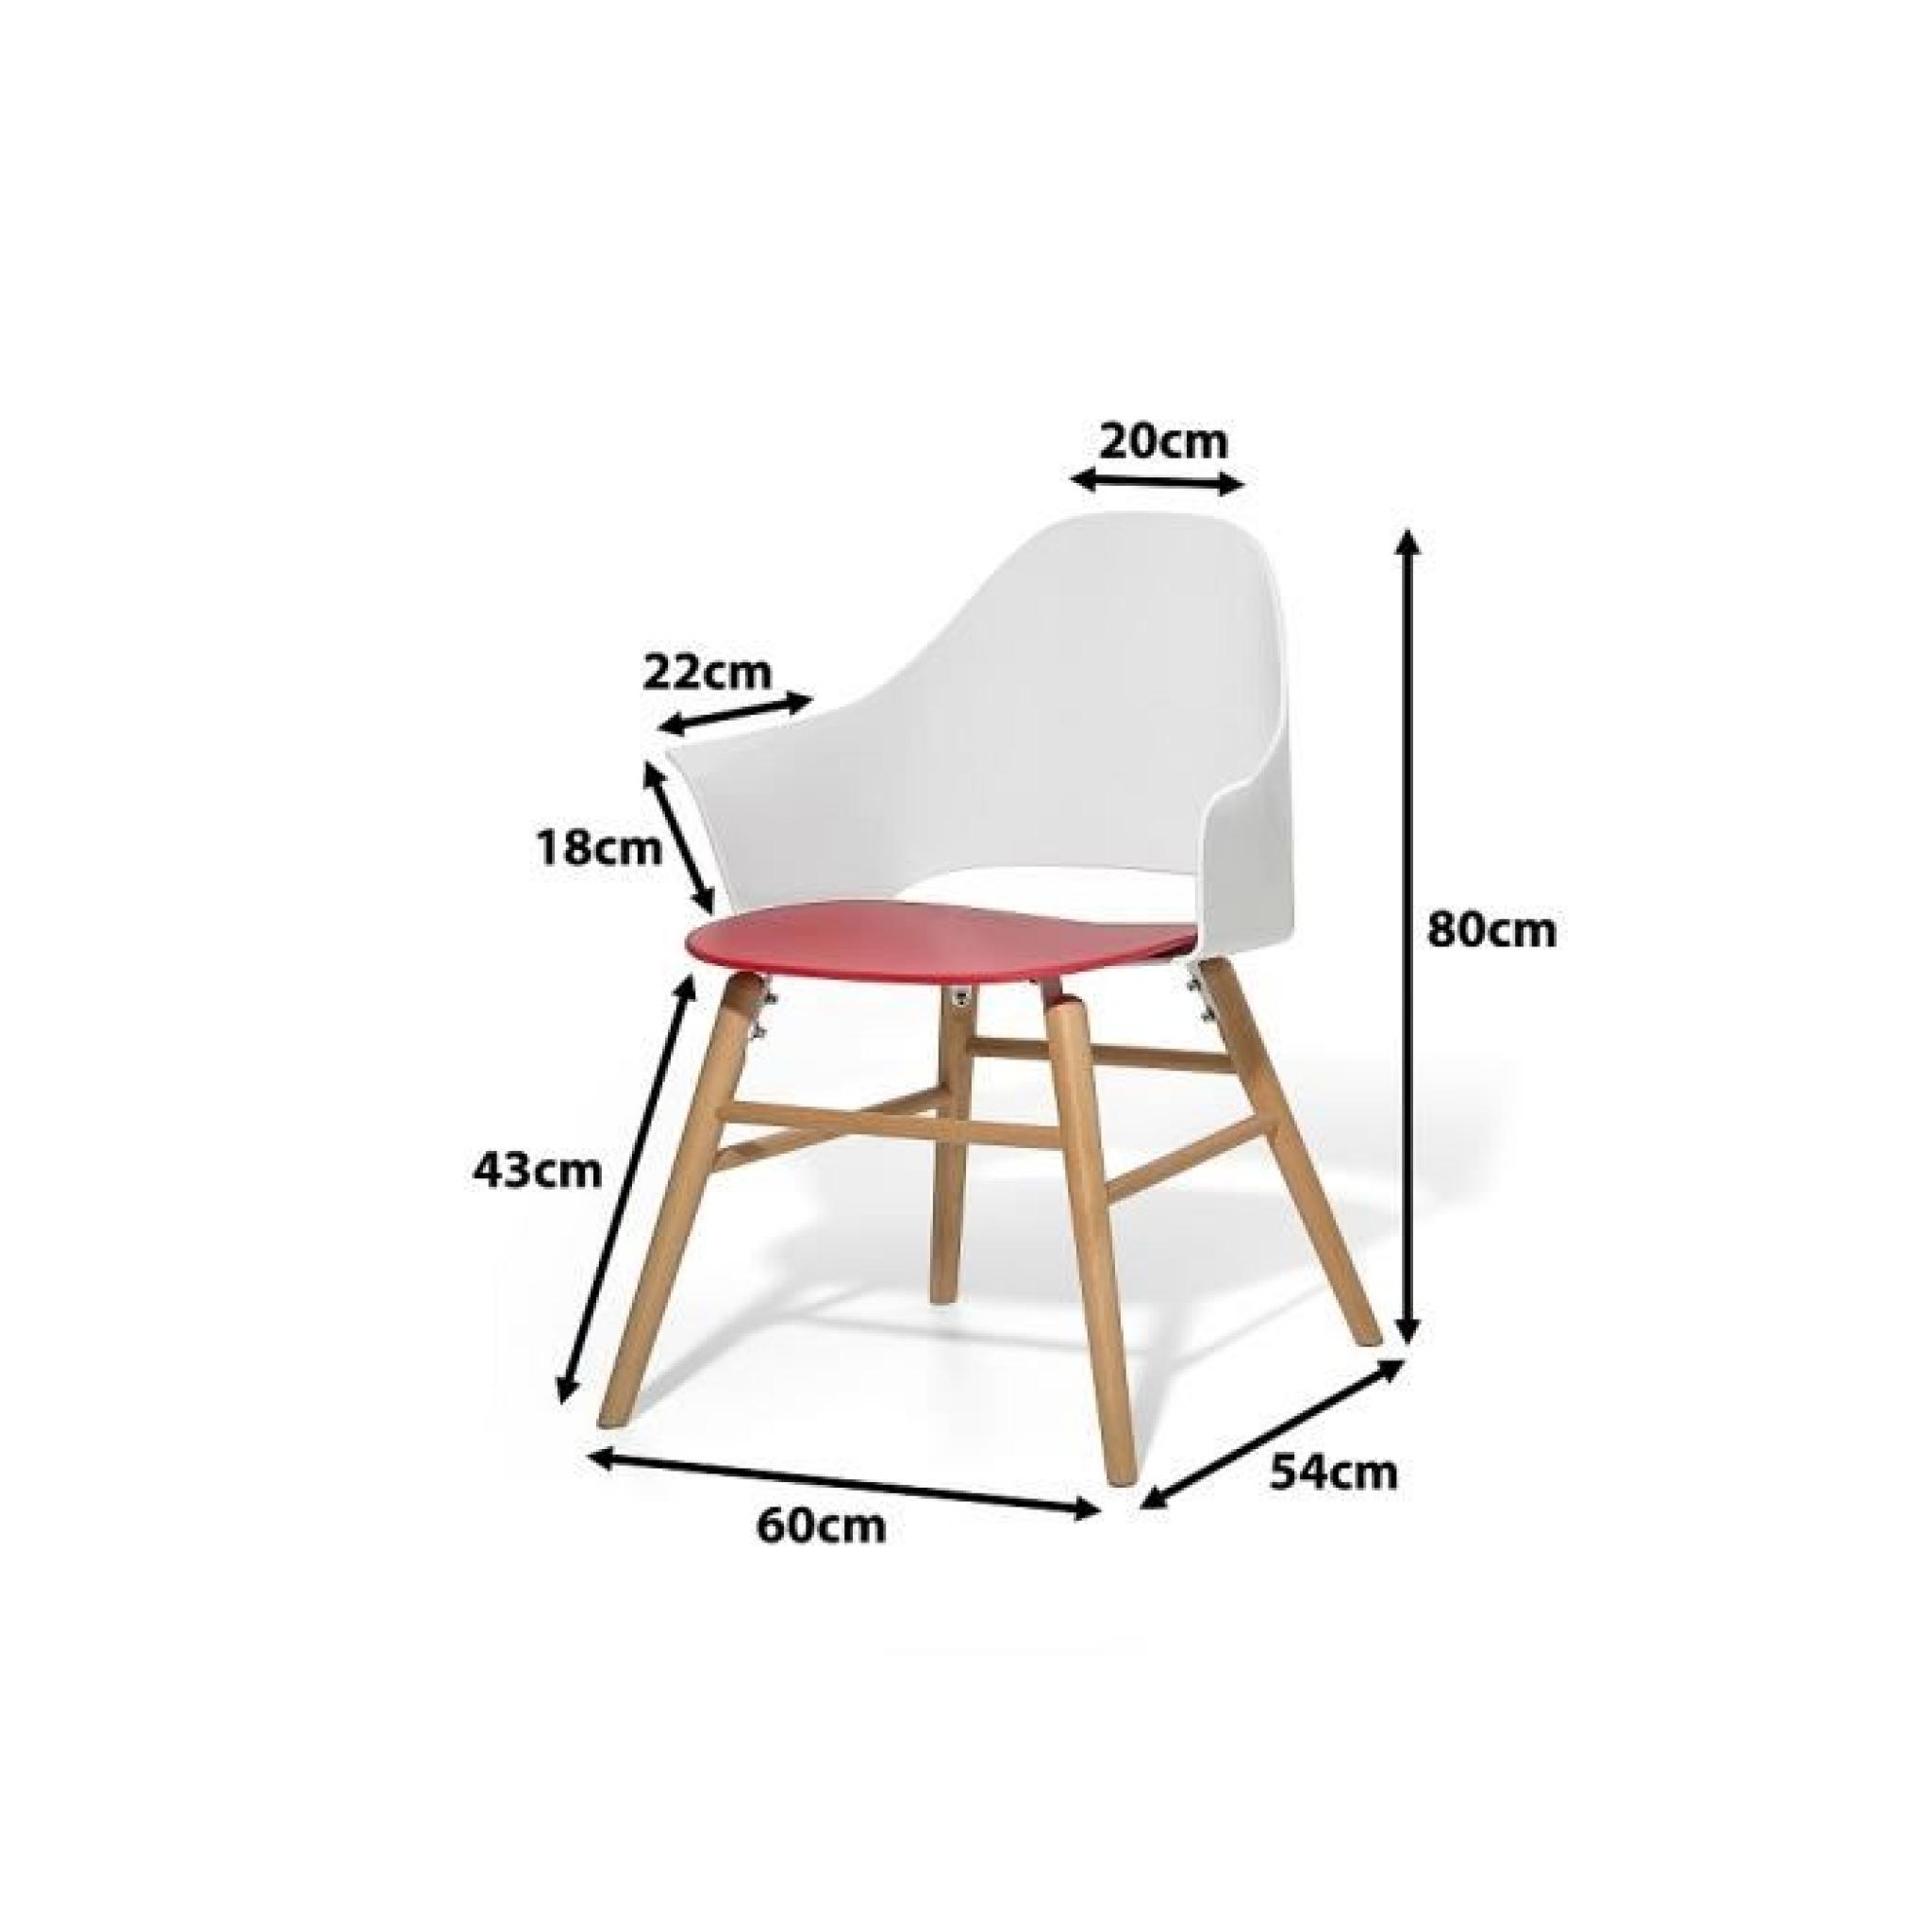 Chaise design - siège en plastique blanc / rouge - Boston pas cher